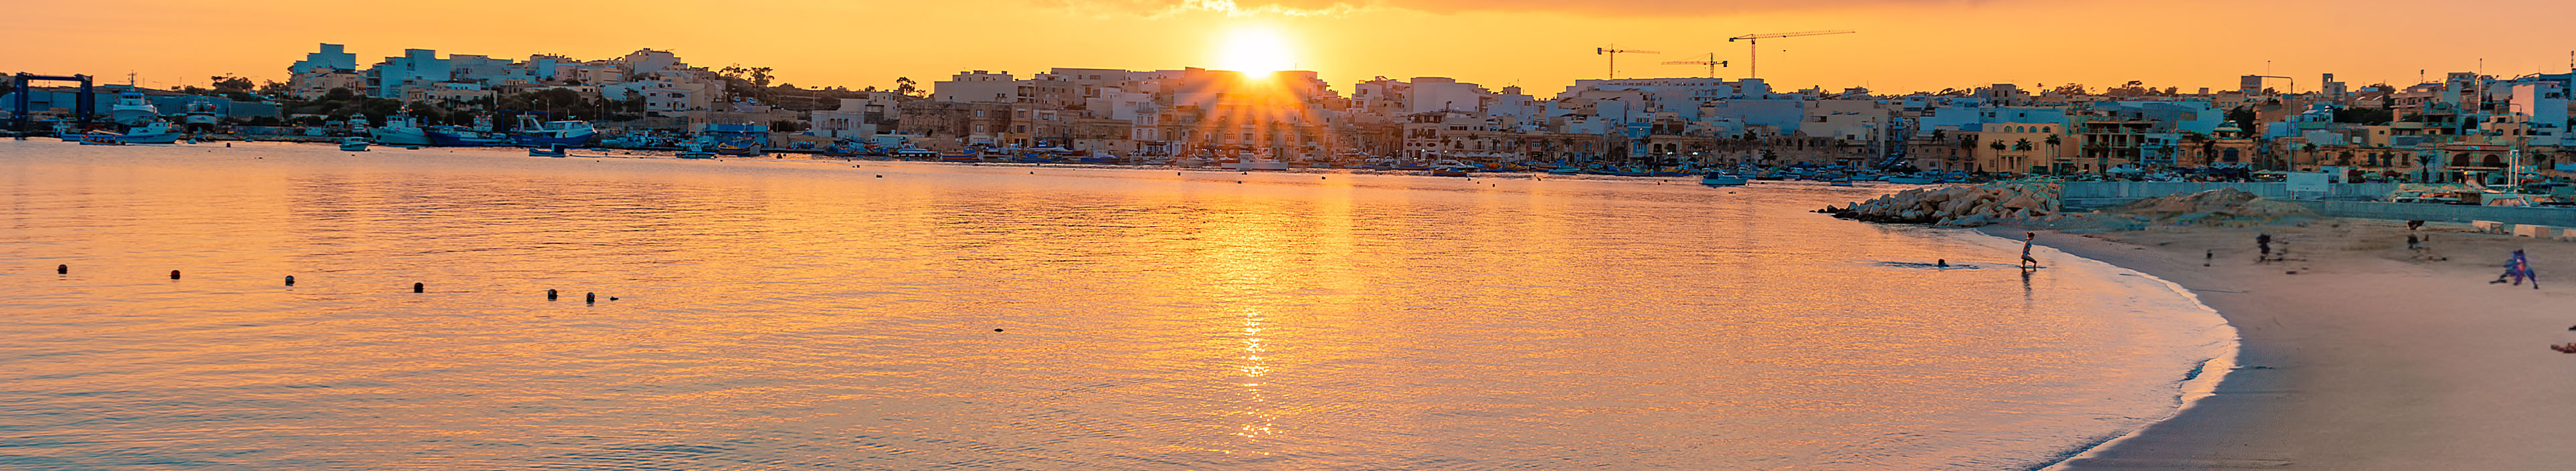 Strand auf Malta während eines Sonnenuntergangs, im Vordergrund blaue Sonnenschirme.